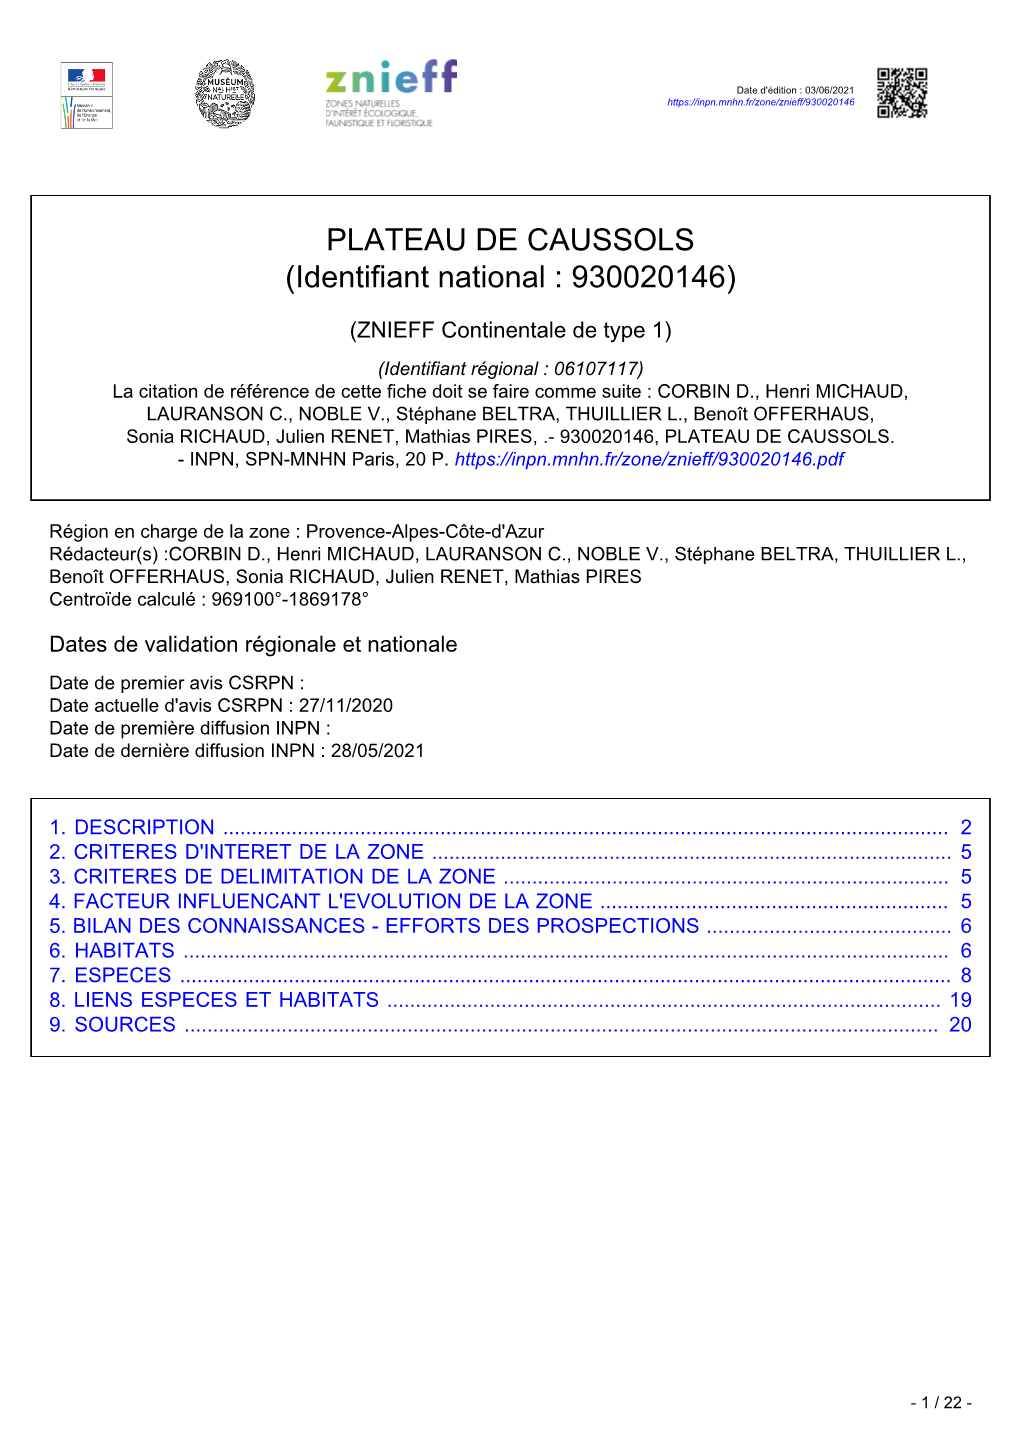 PLATEAU DE CAUSSOLS (Identifiant National : 930020146)